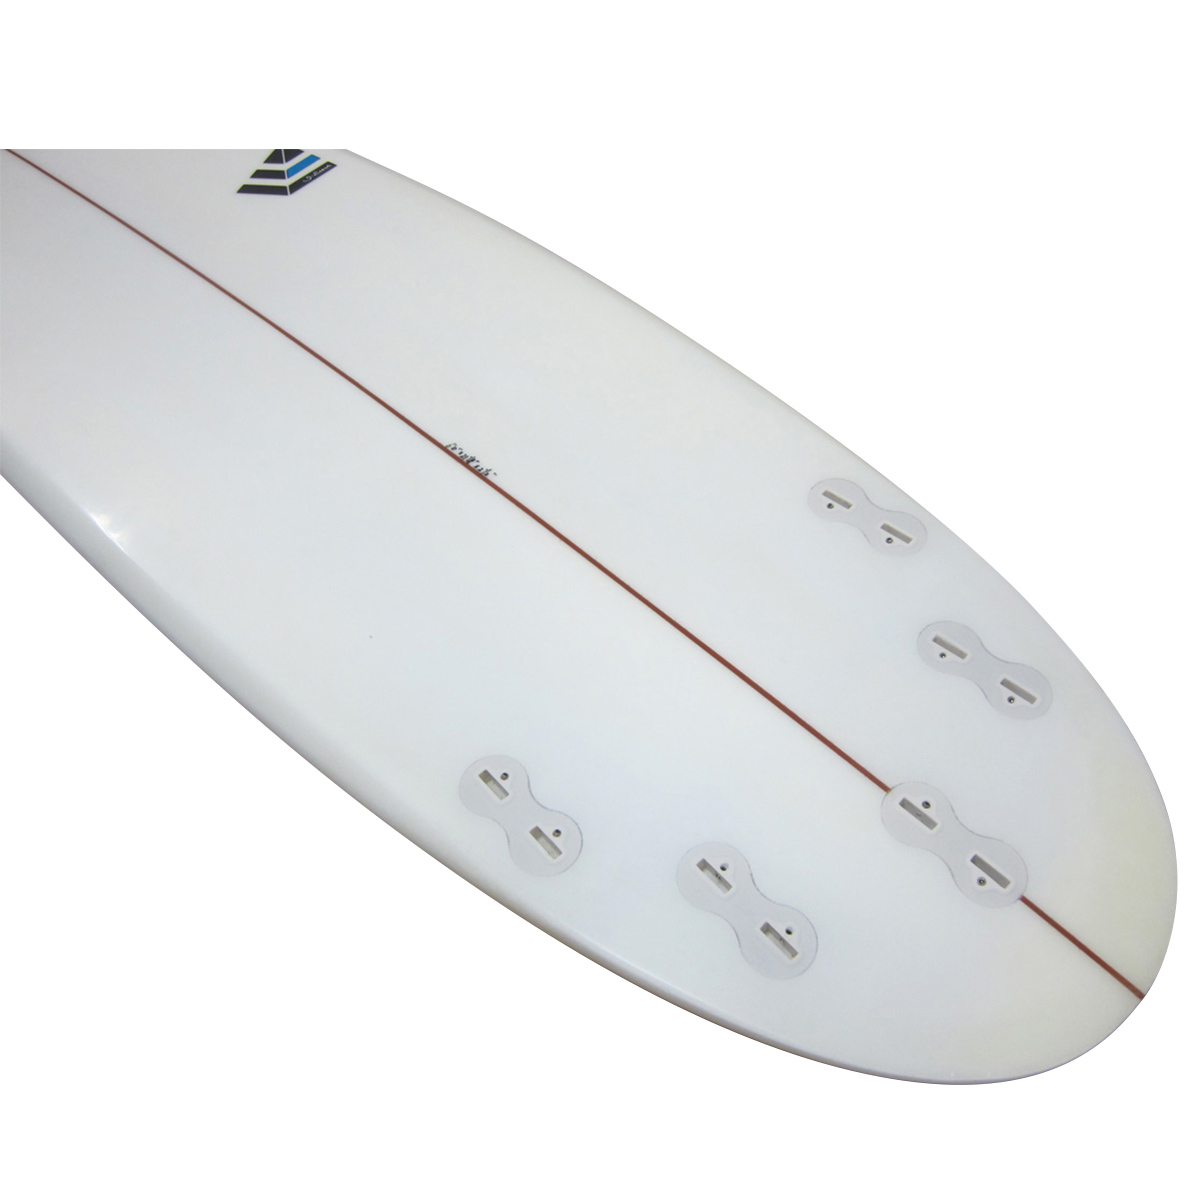 I-Enzer Surfboards / T3C Model 6`0